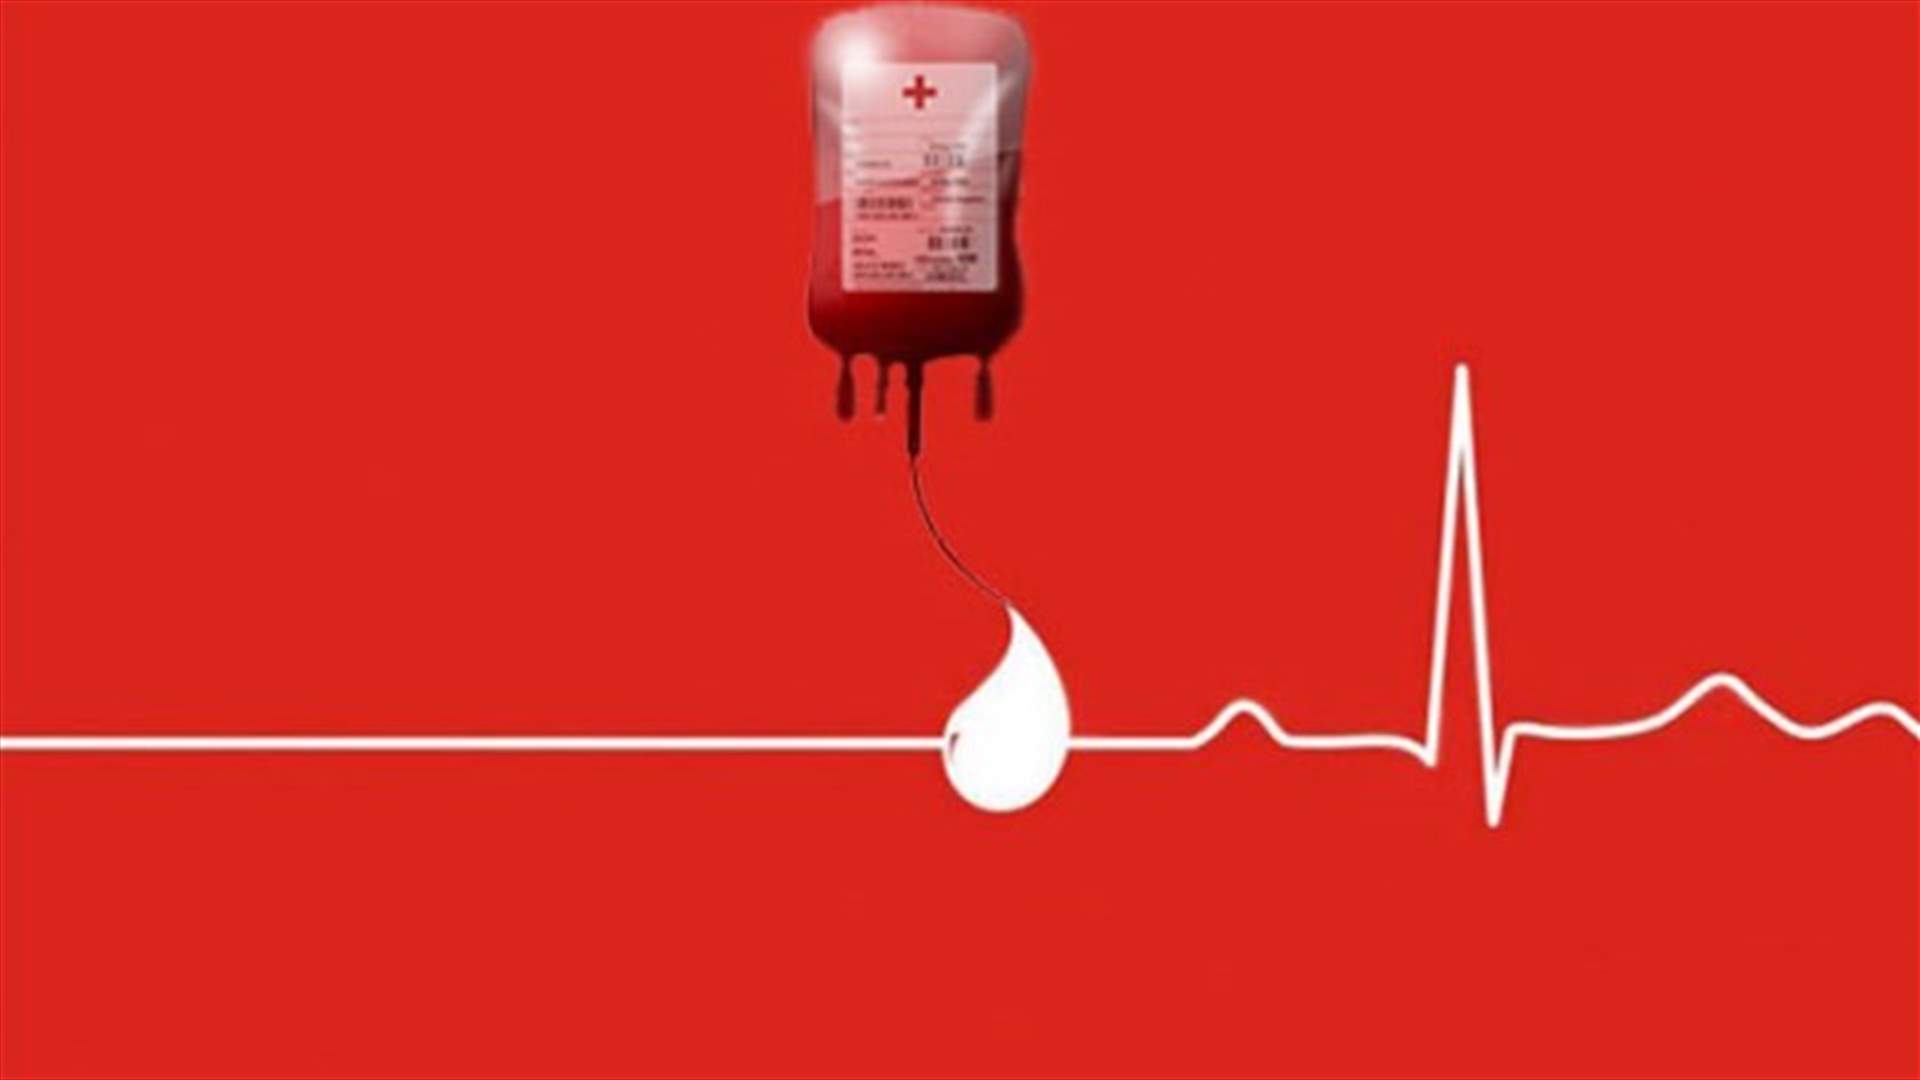 مريض في مستشفى الشرق الاوسط- بصاليم بحاجة ماسة الى بلاكيت دم من فئة AB+ . للتبرع الاتصال على 03956199